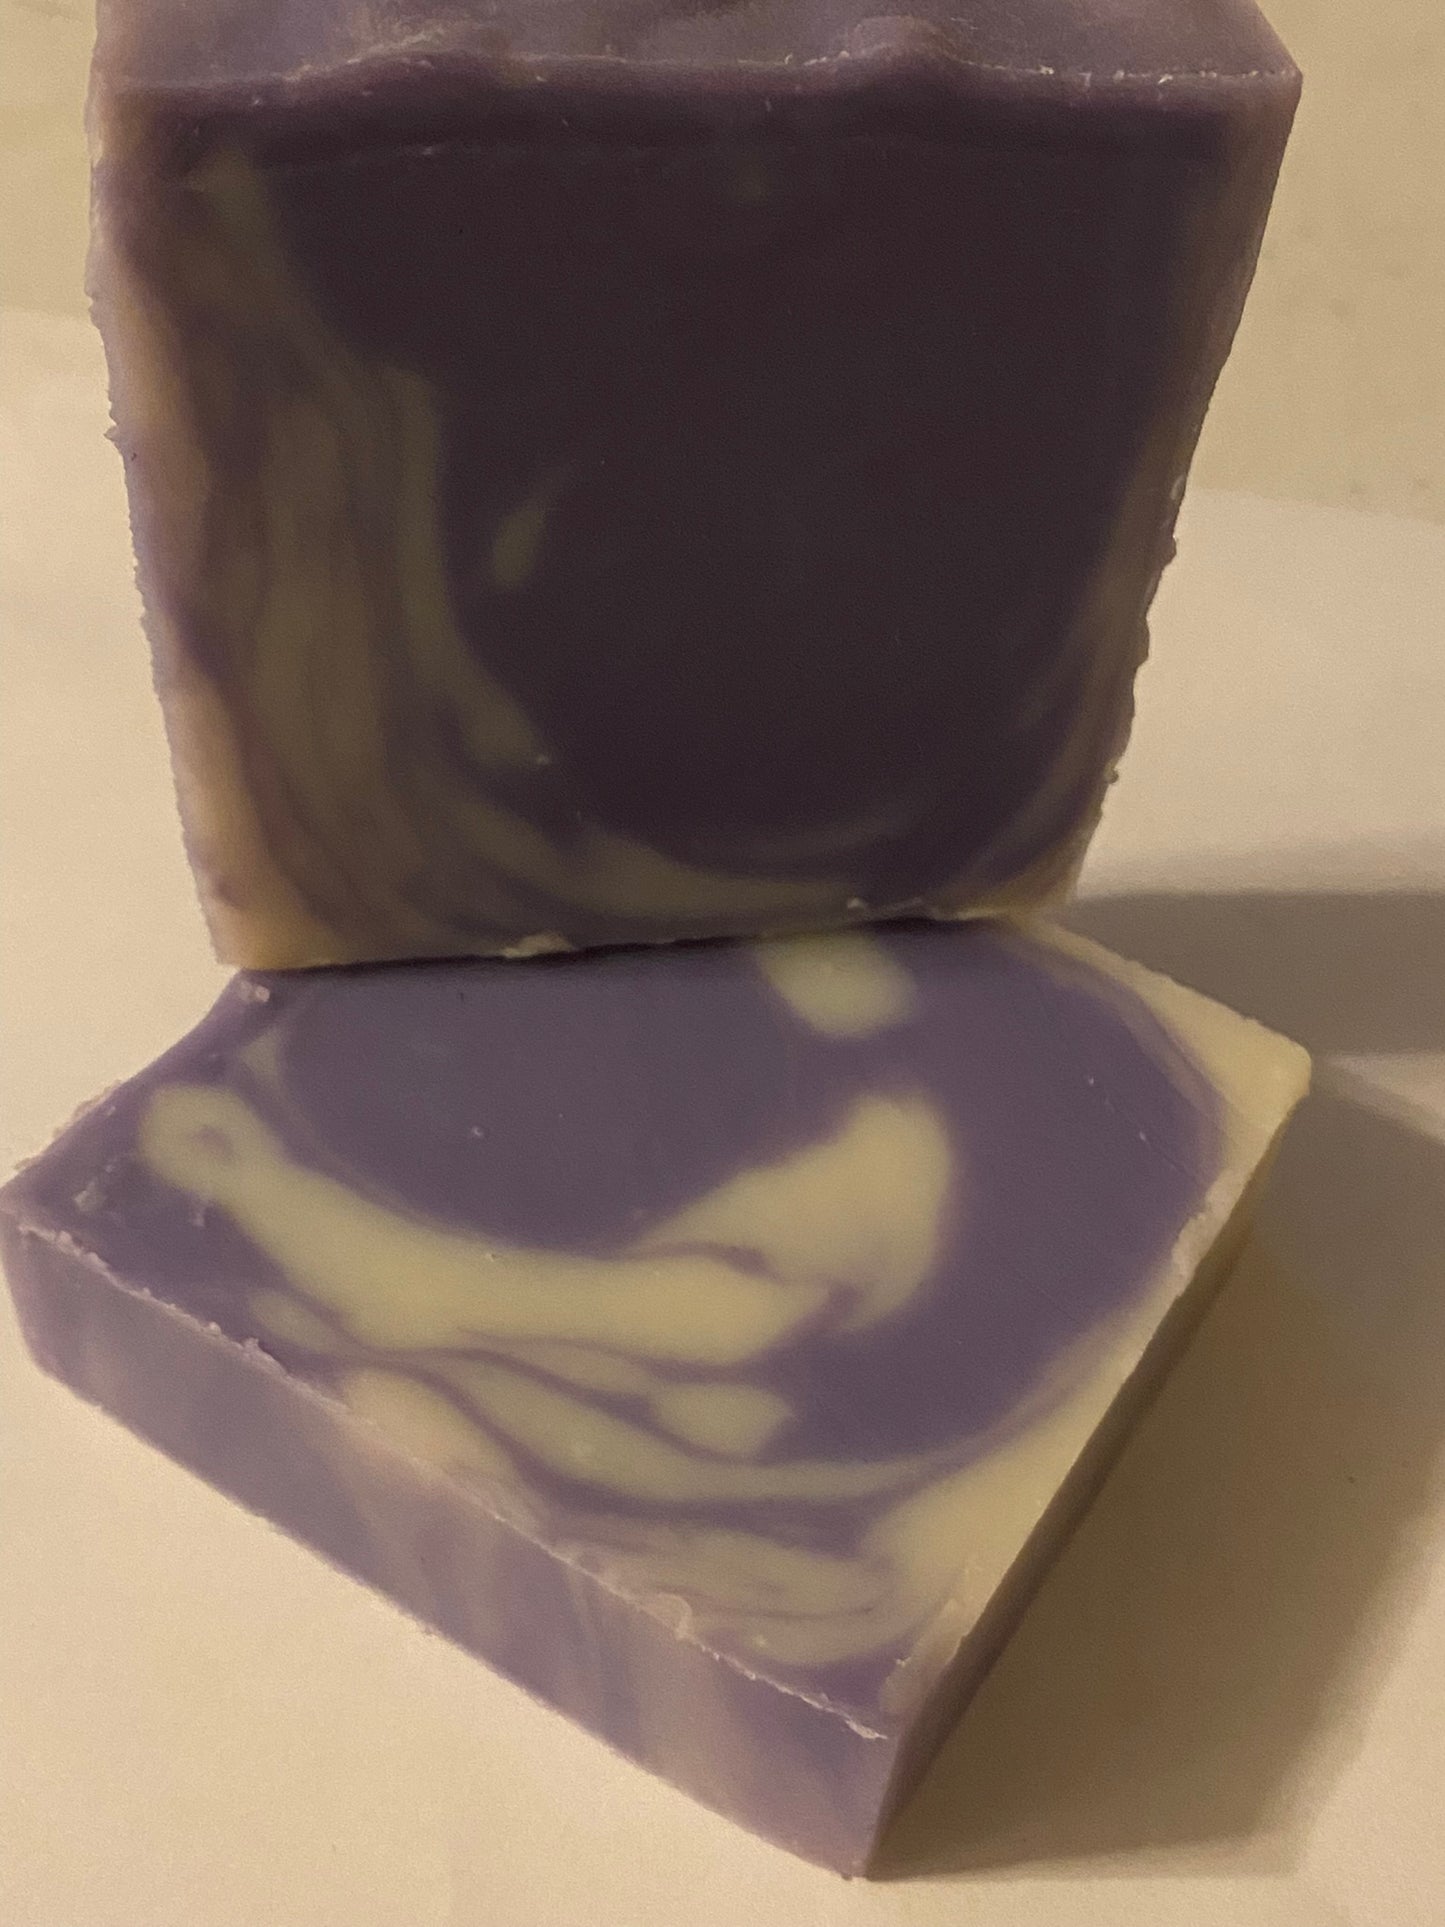 Purple and white pretty soap